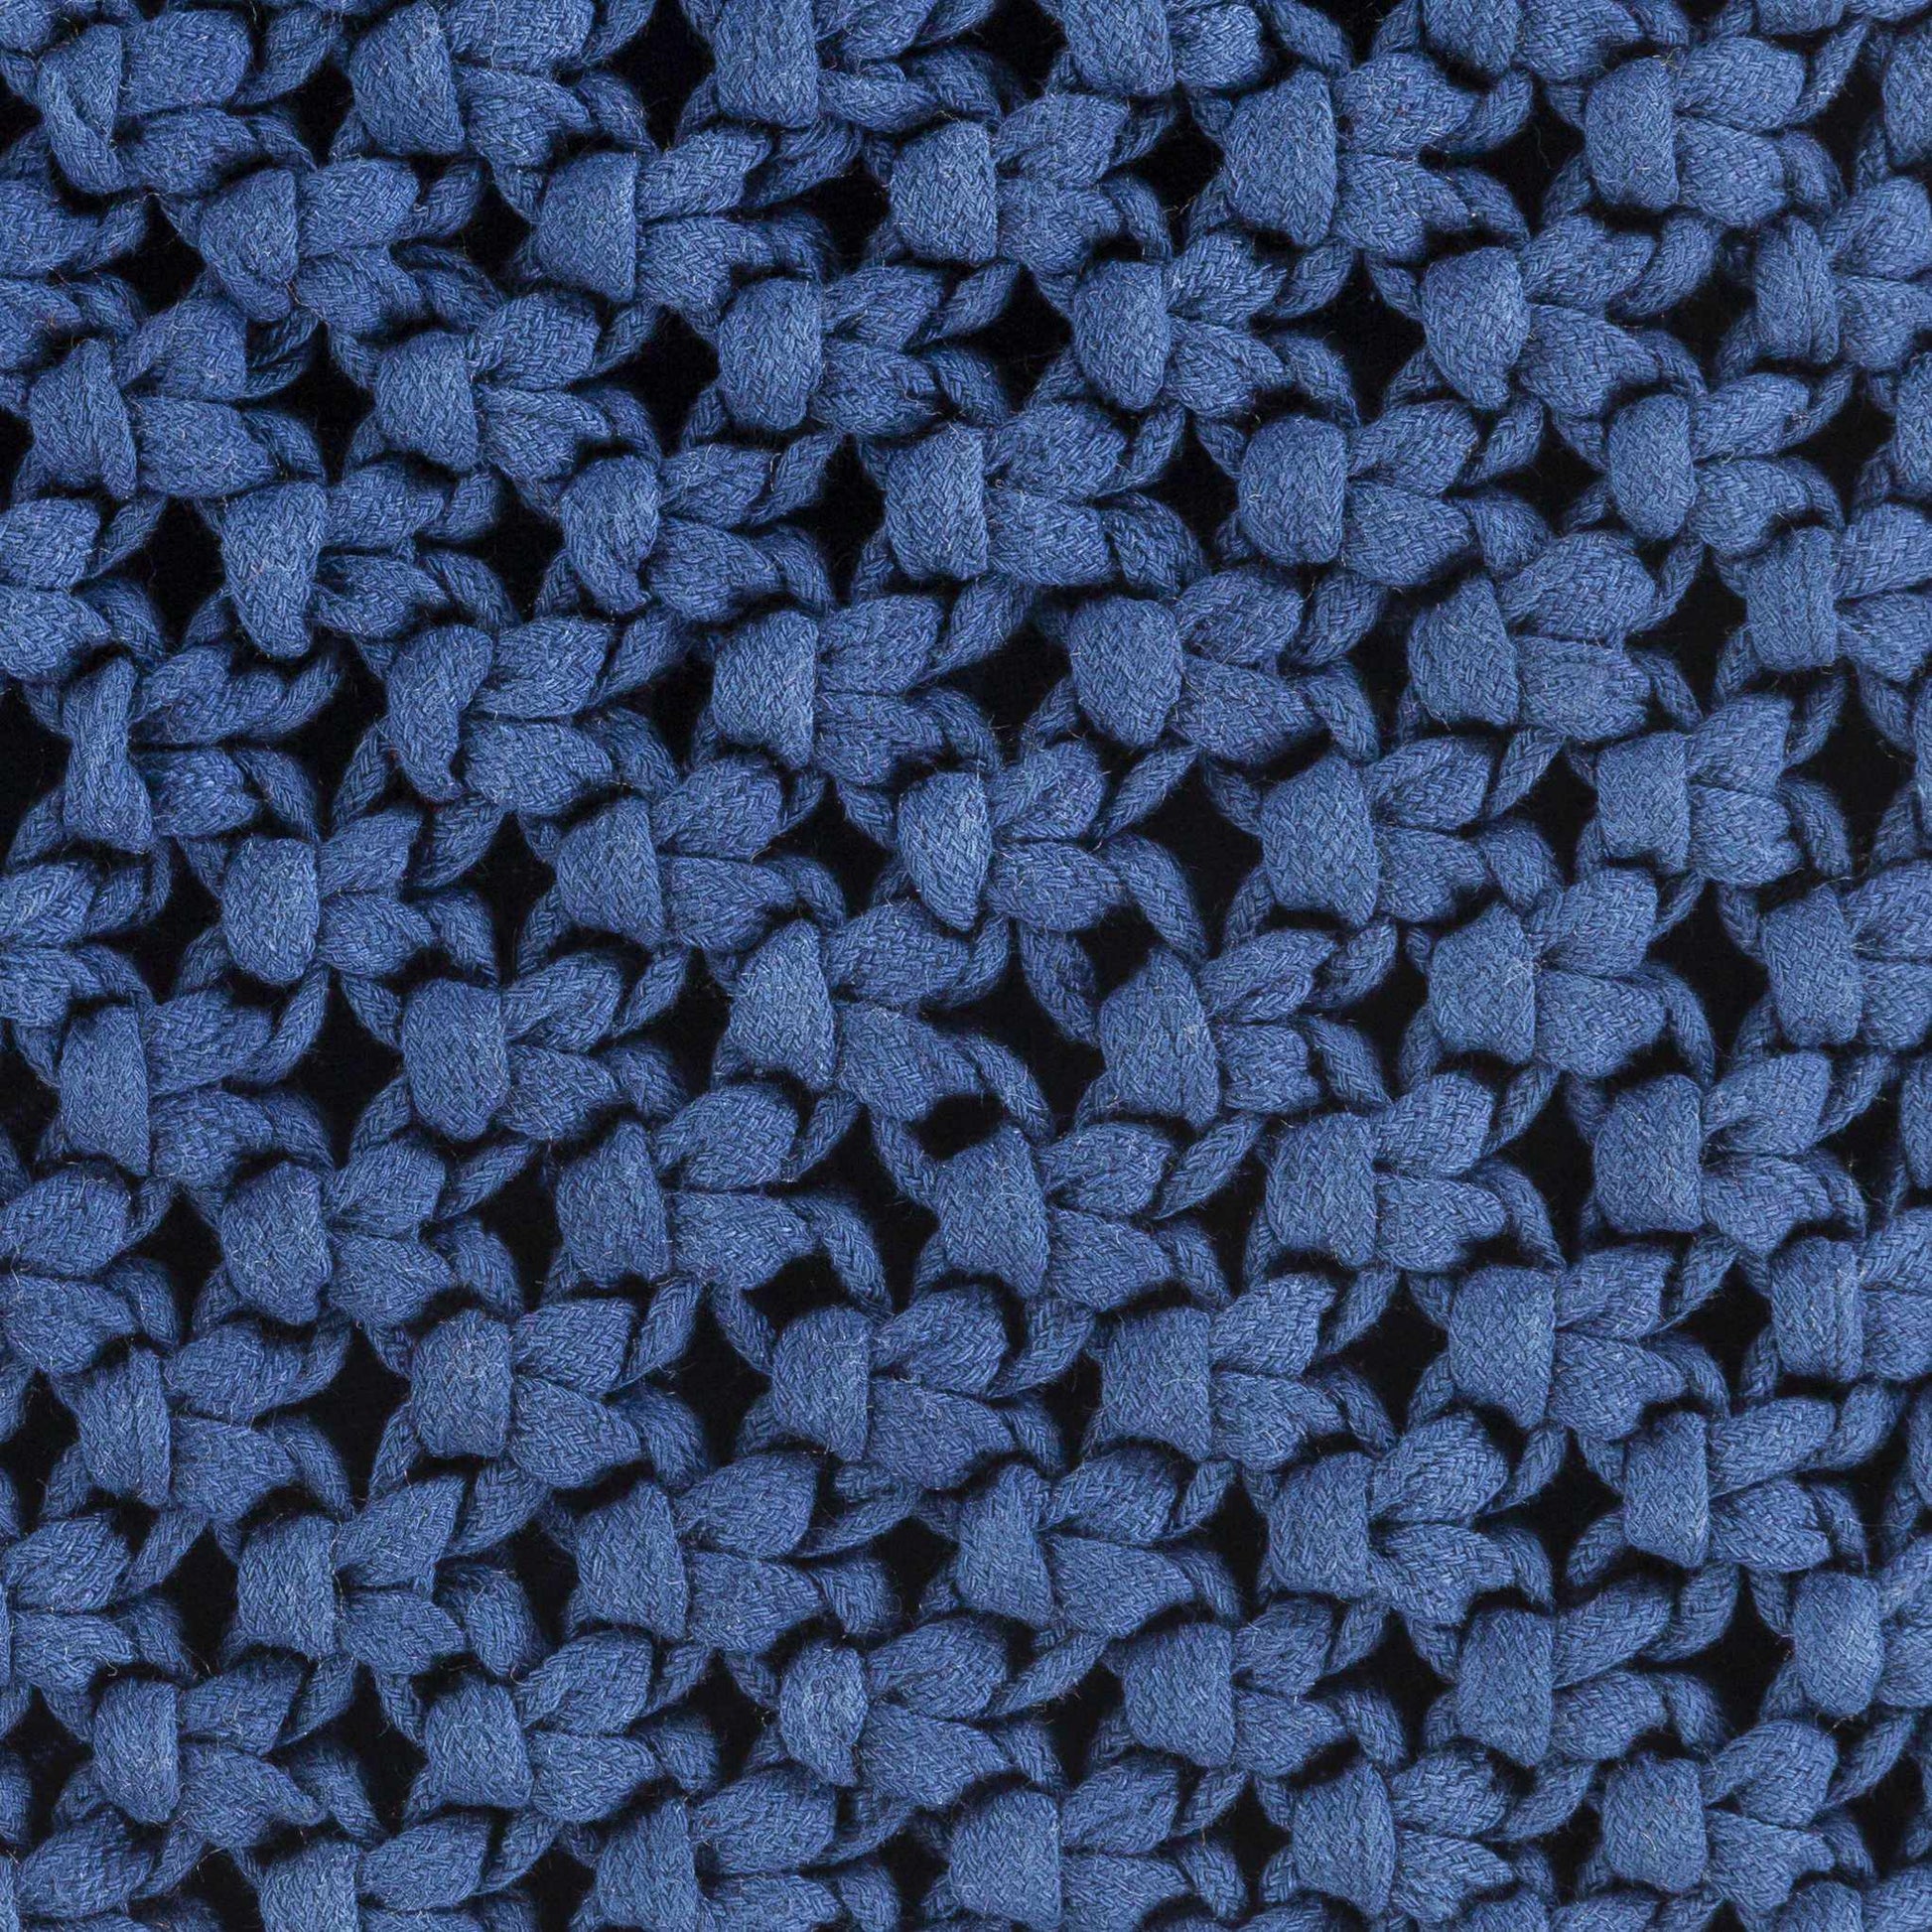 Helecine Dark Blue Pillow Cover